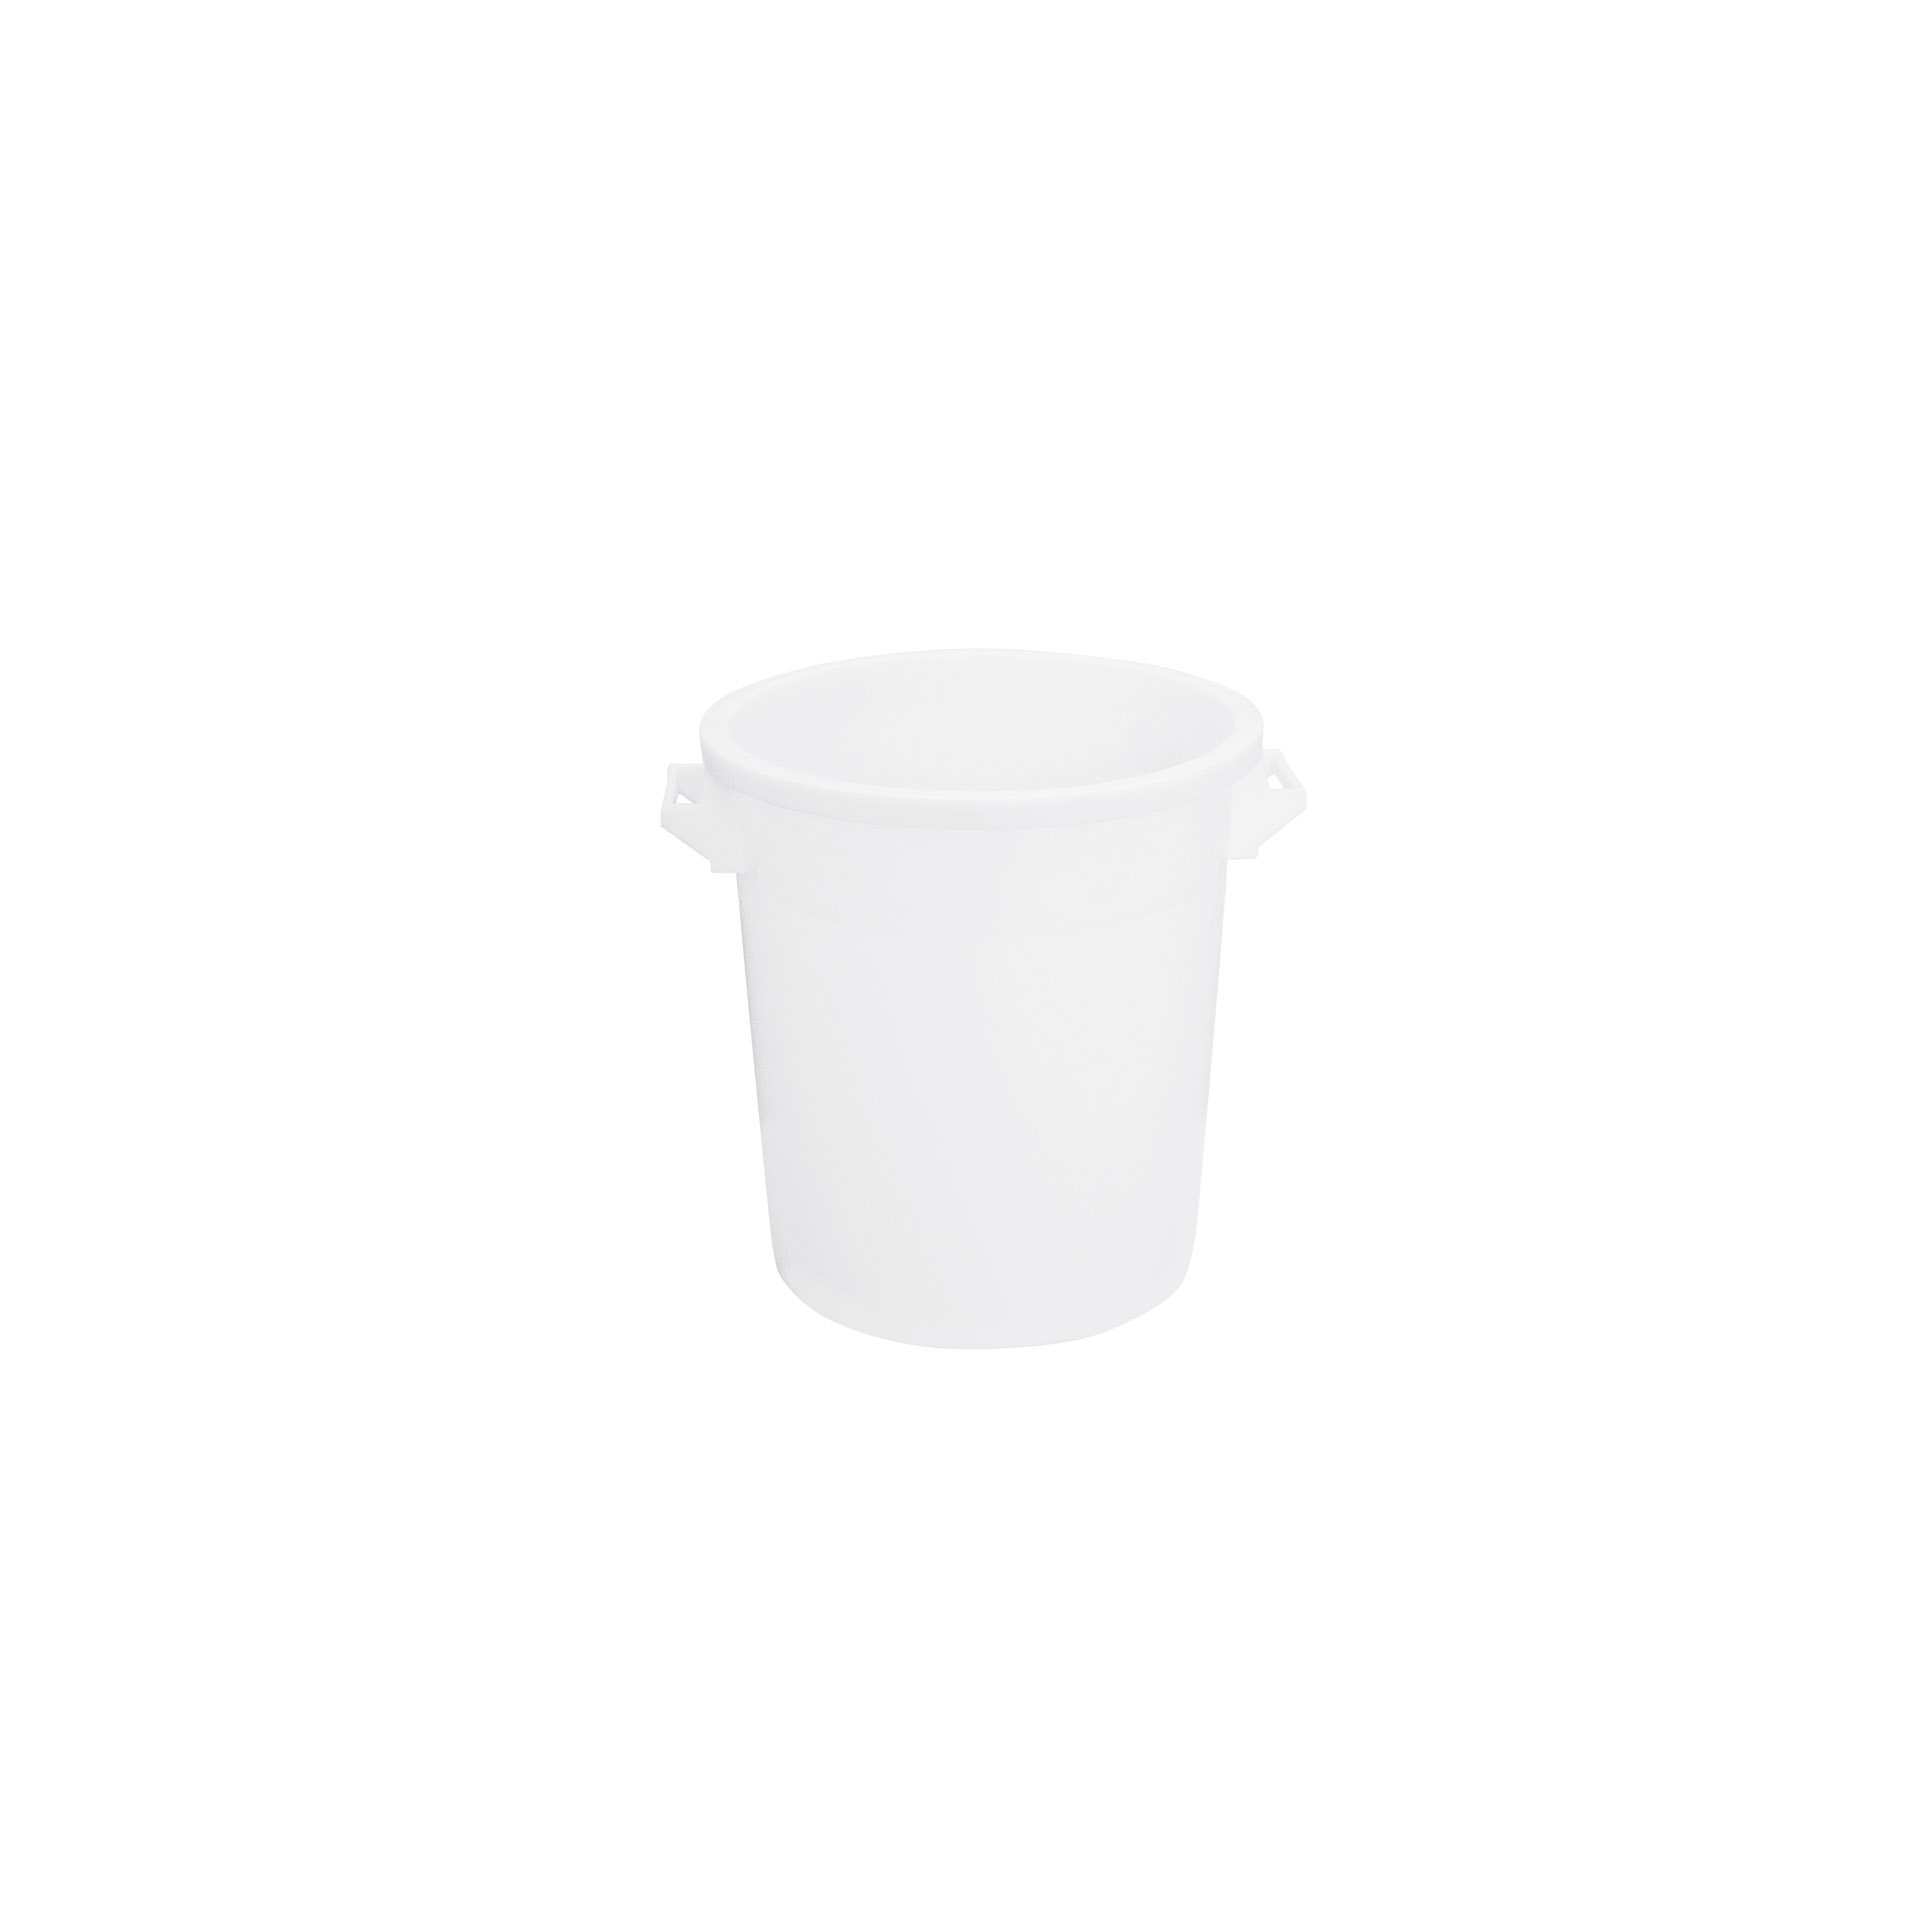 Kübel - mit 2 Griffen - weiß - Abm. 39,0 x 39,0 x 41,0 cm - Inhalt 35 l - Polyethylen - 202000-C